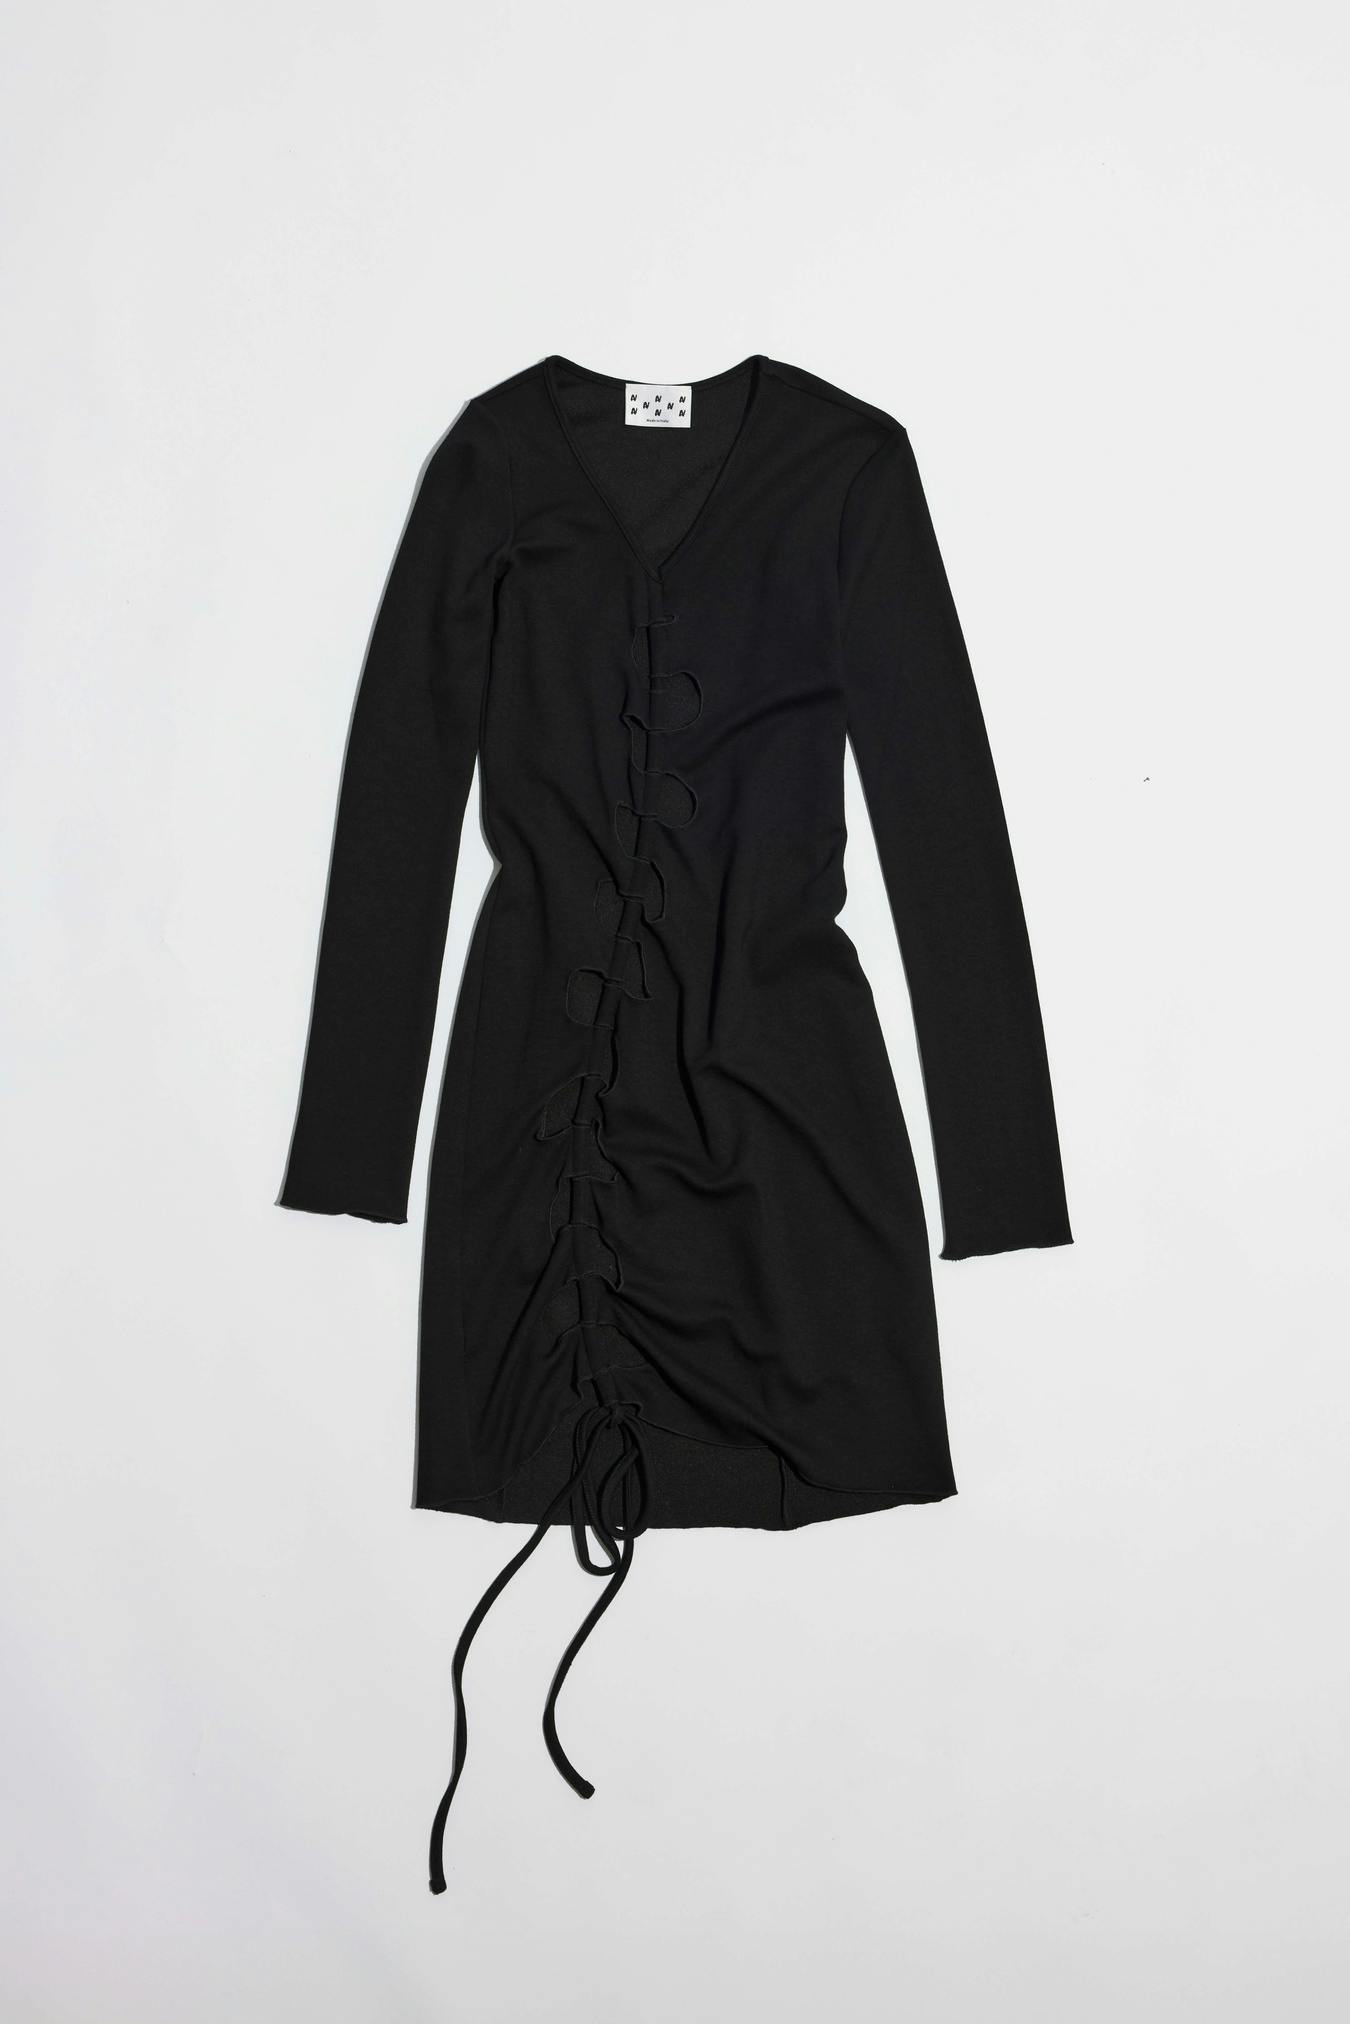 Mini cutout dress long sleeve black